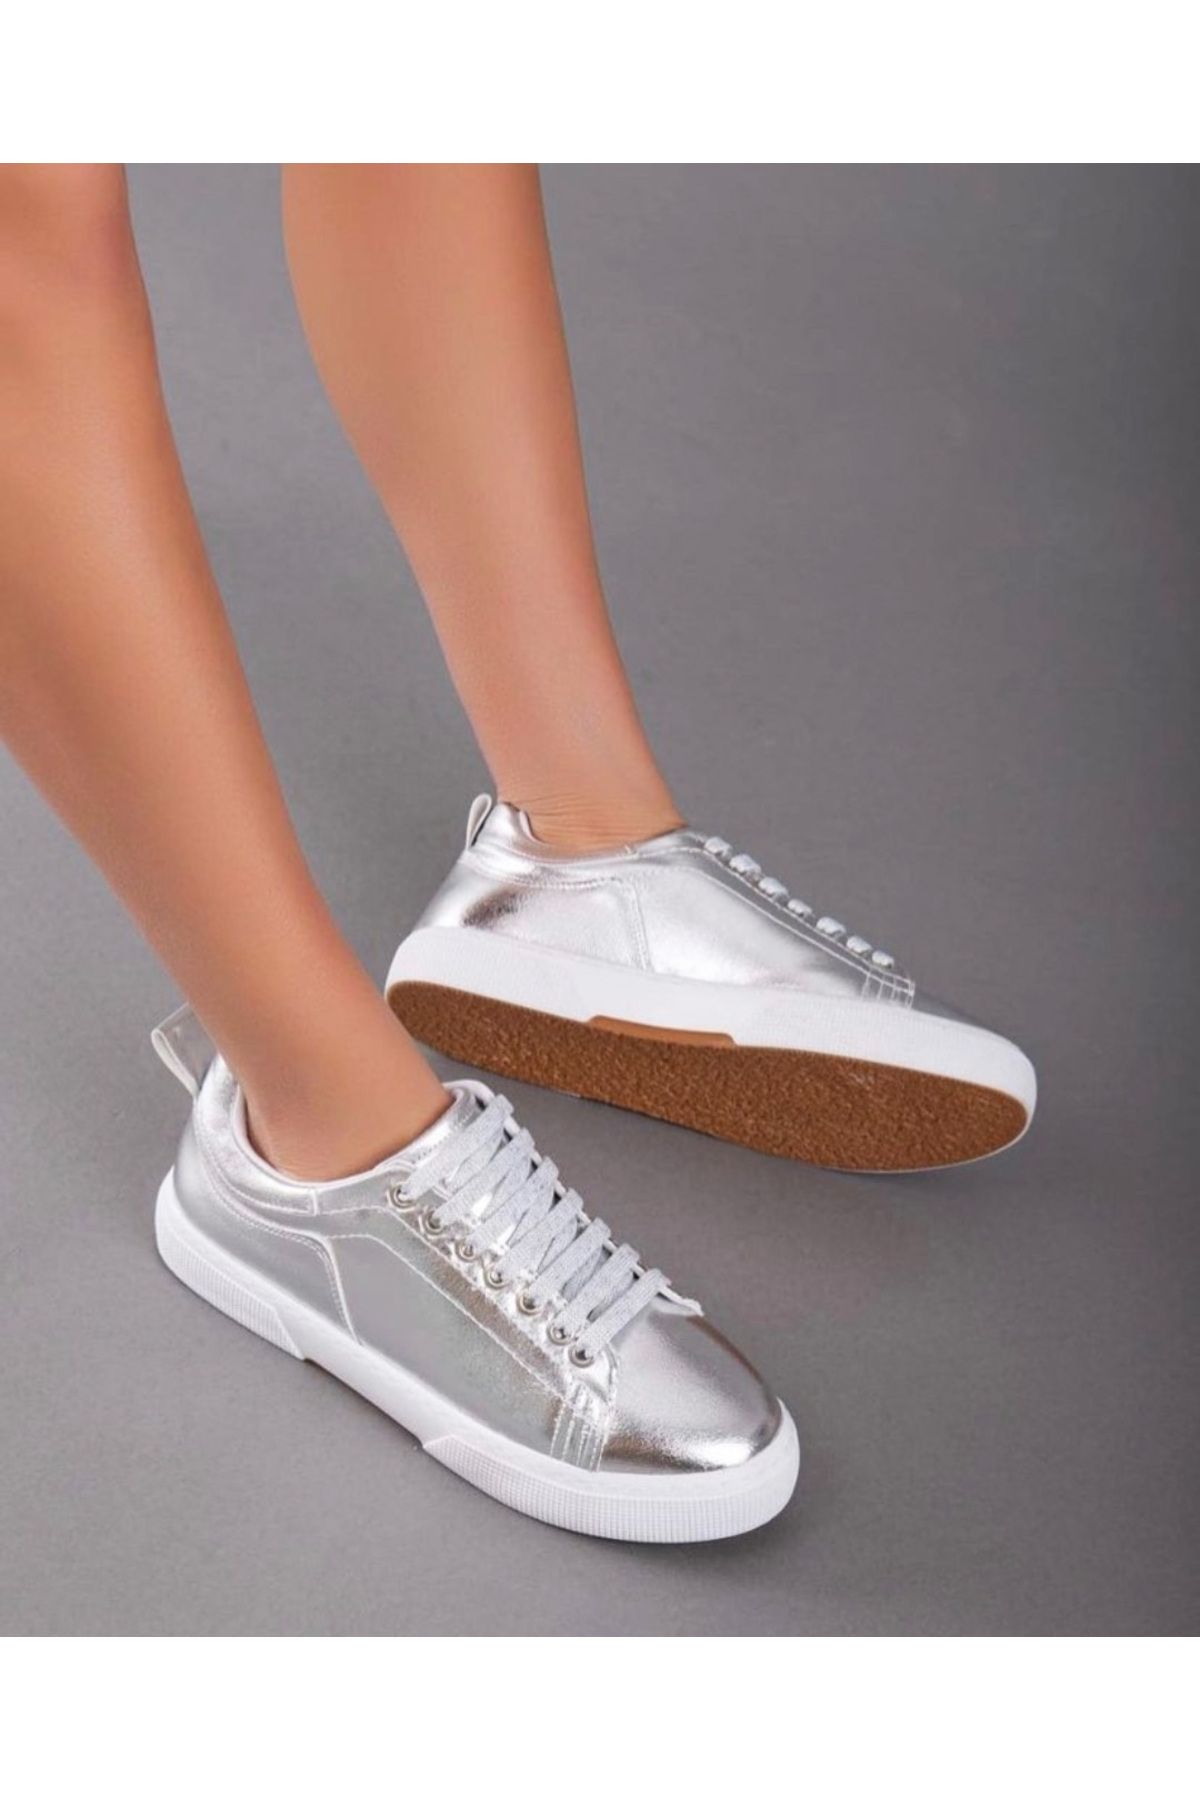 Afilli Kadın Gümüş Parlak Kalın Taban Ortopedik Rahat Günlük Casual Yürüyüş Sneaker Outdoor Spor Ayakkabı